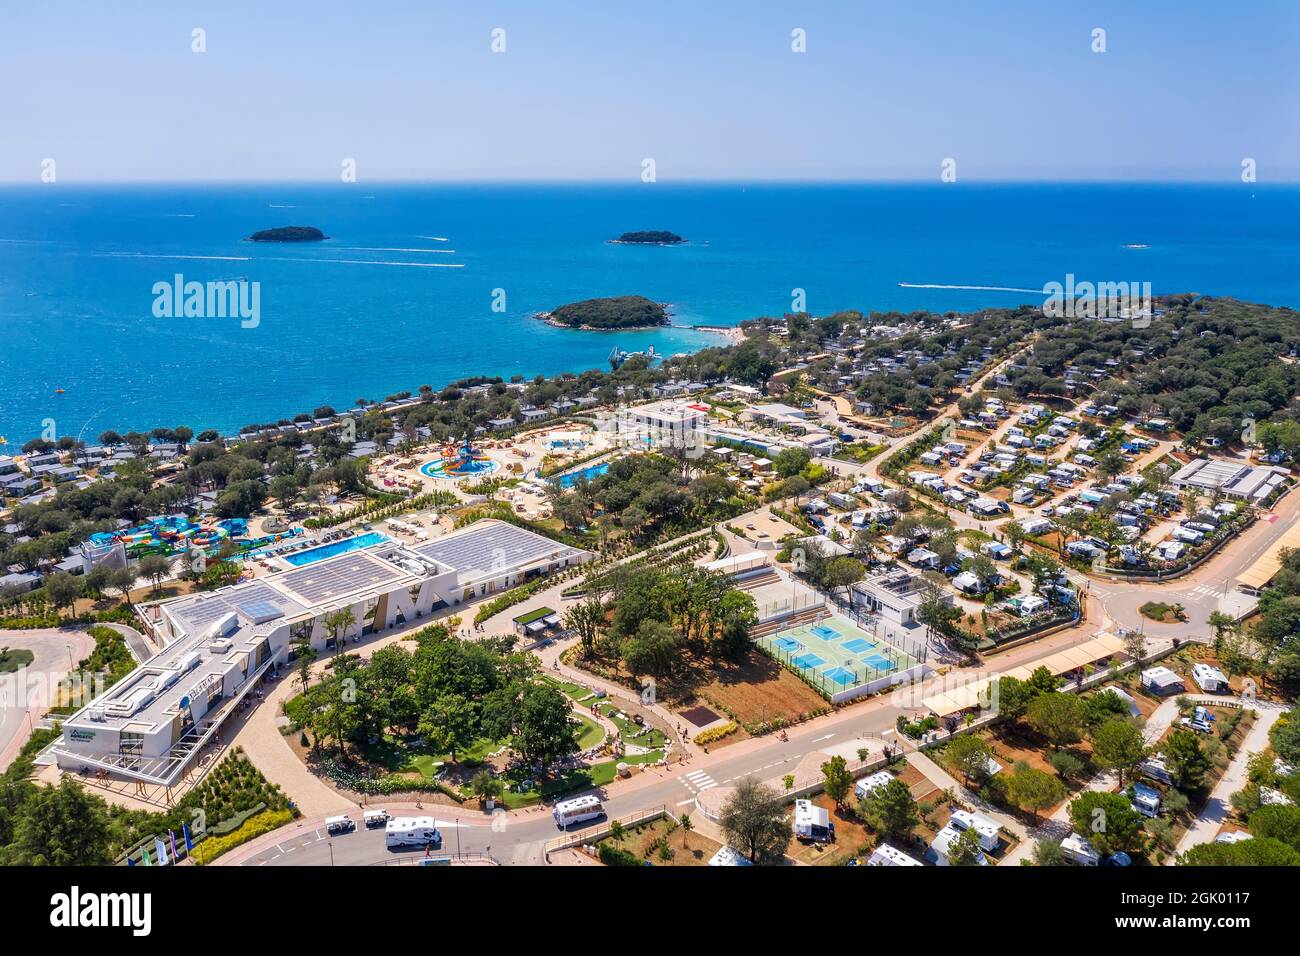 FUNTANA, CROATIE - 31 JUILLET 2021: Une vue aérienne incroyable d'Istra Premium Camping Resort, propriété d'Hotels and Resorts Valamar, entouré par plusieurs moi Banque D'Images